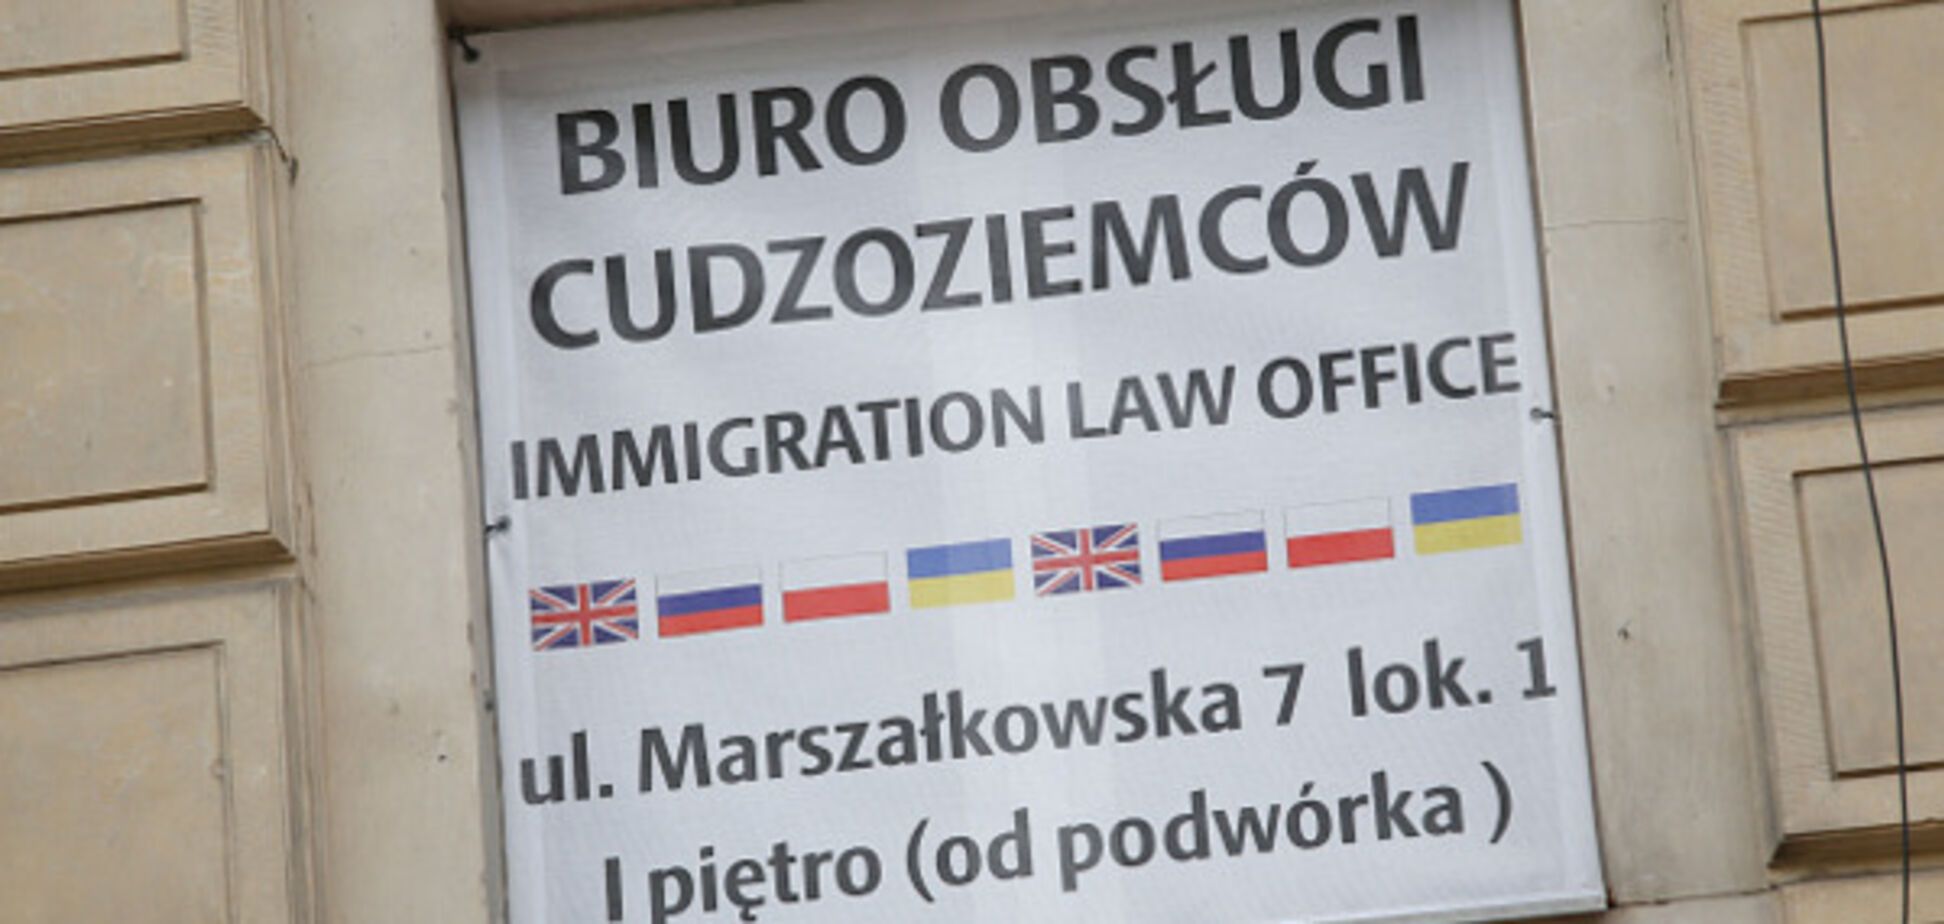 Как живется украинцам в Польше: рассказы эмигрантов